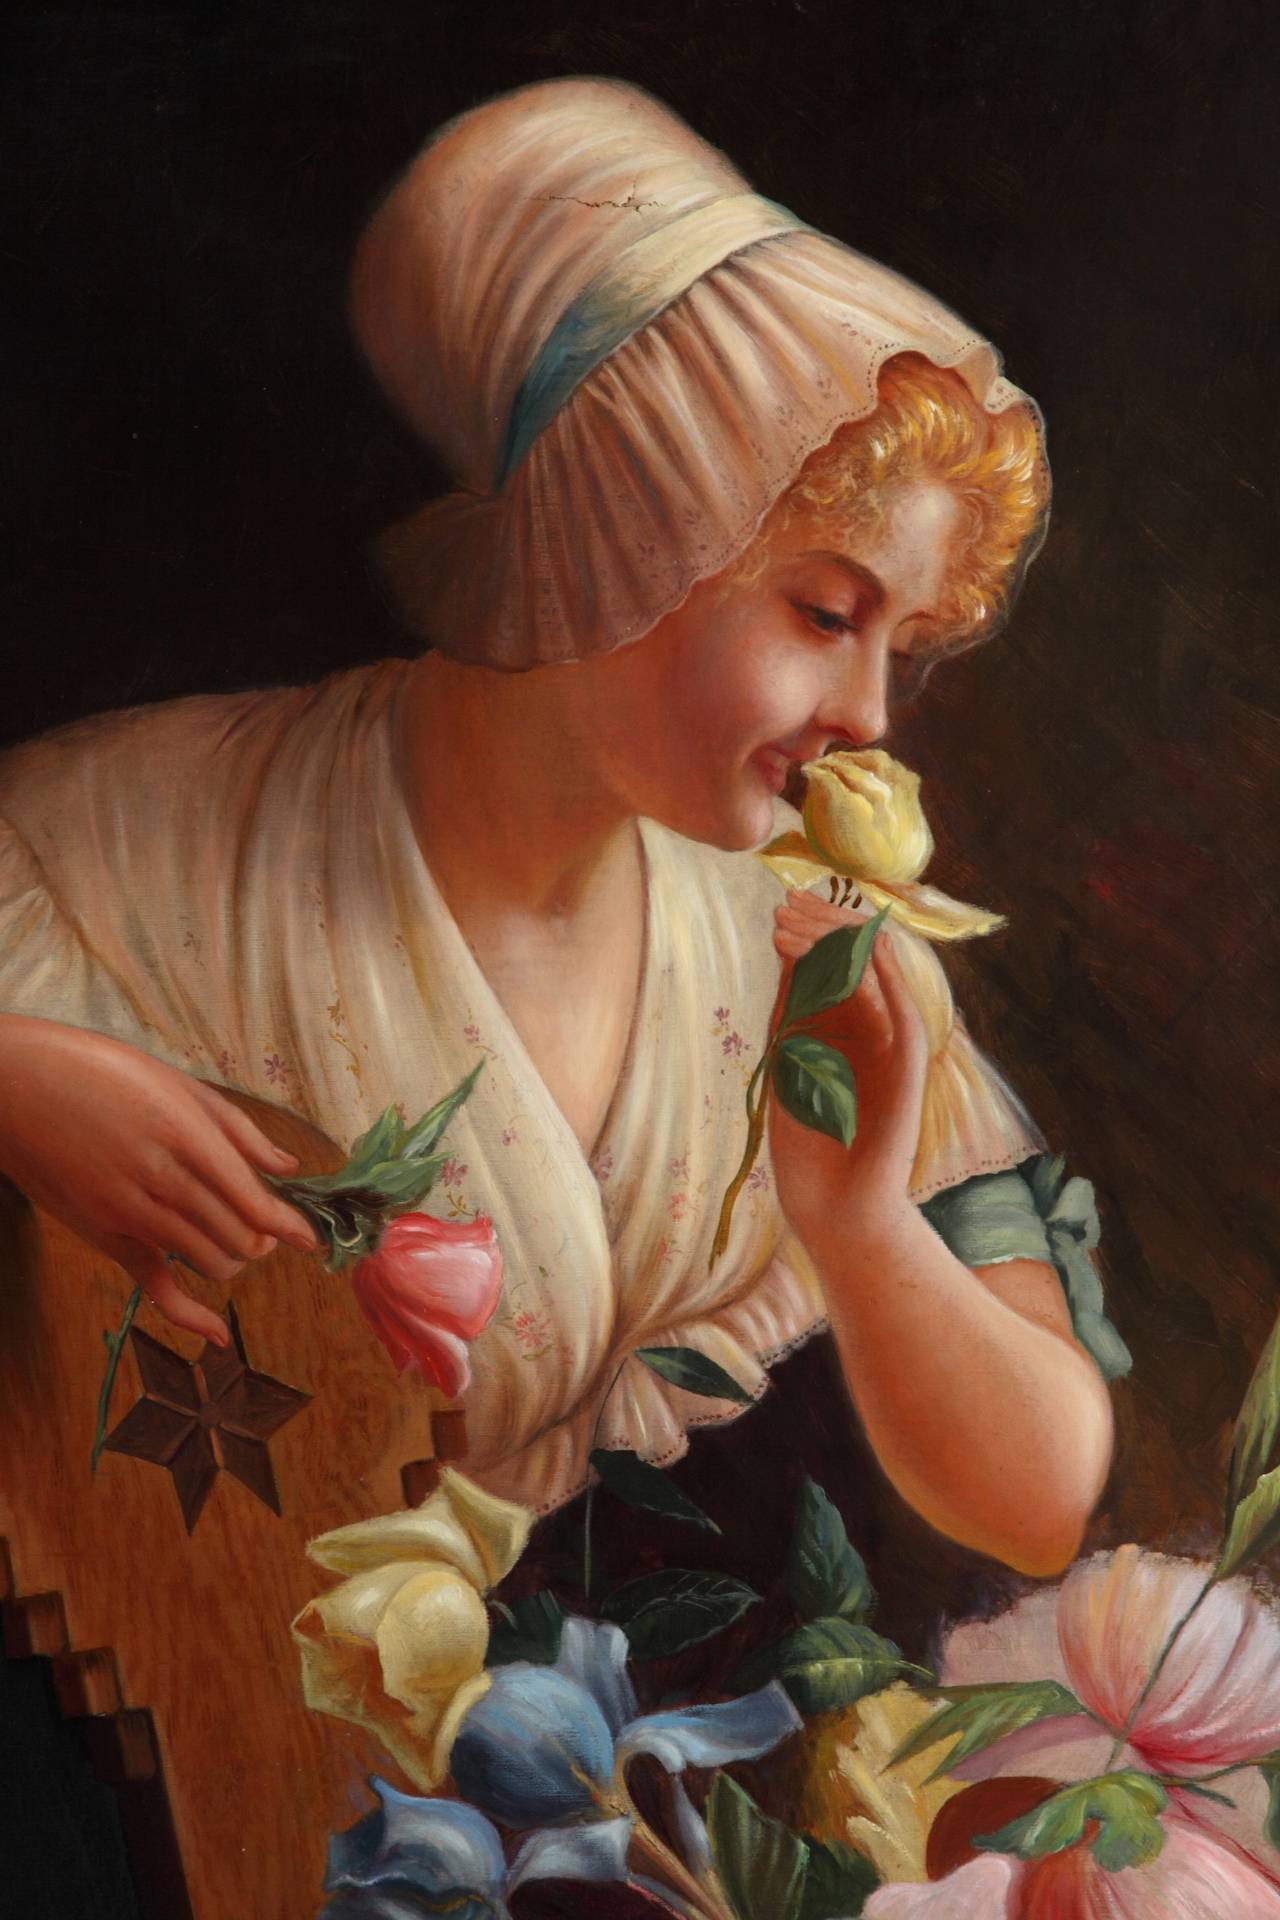 italienisches Ölgemälde auf Leinwand aus dem 19. Jahrhundert, das eine lächelnde Dame mit einer Haube und einem Blumenkorb in einem geschnitzten Holzrahmen zeigt.

Unterschrieben: Coronelli

Abmessungen
Gerahmt: 38